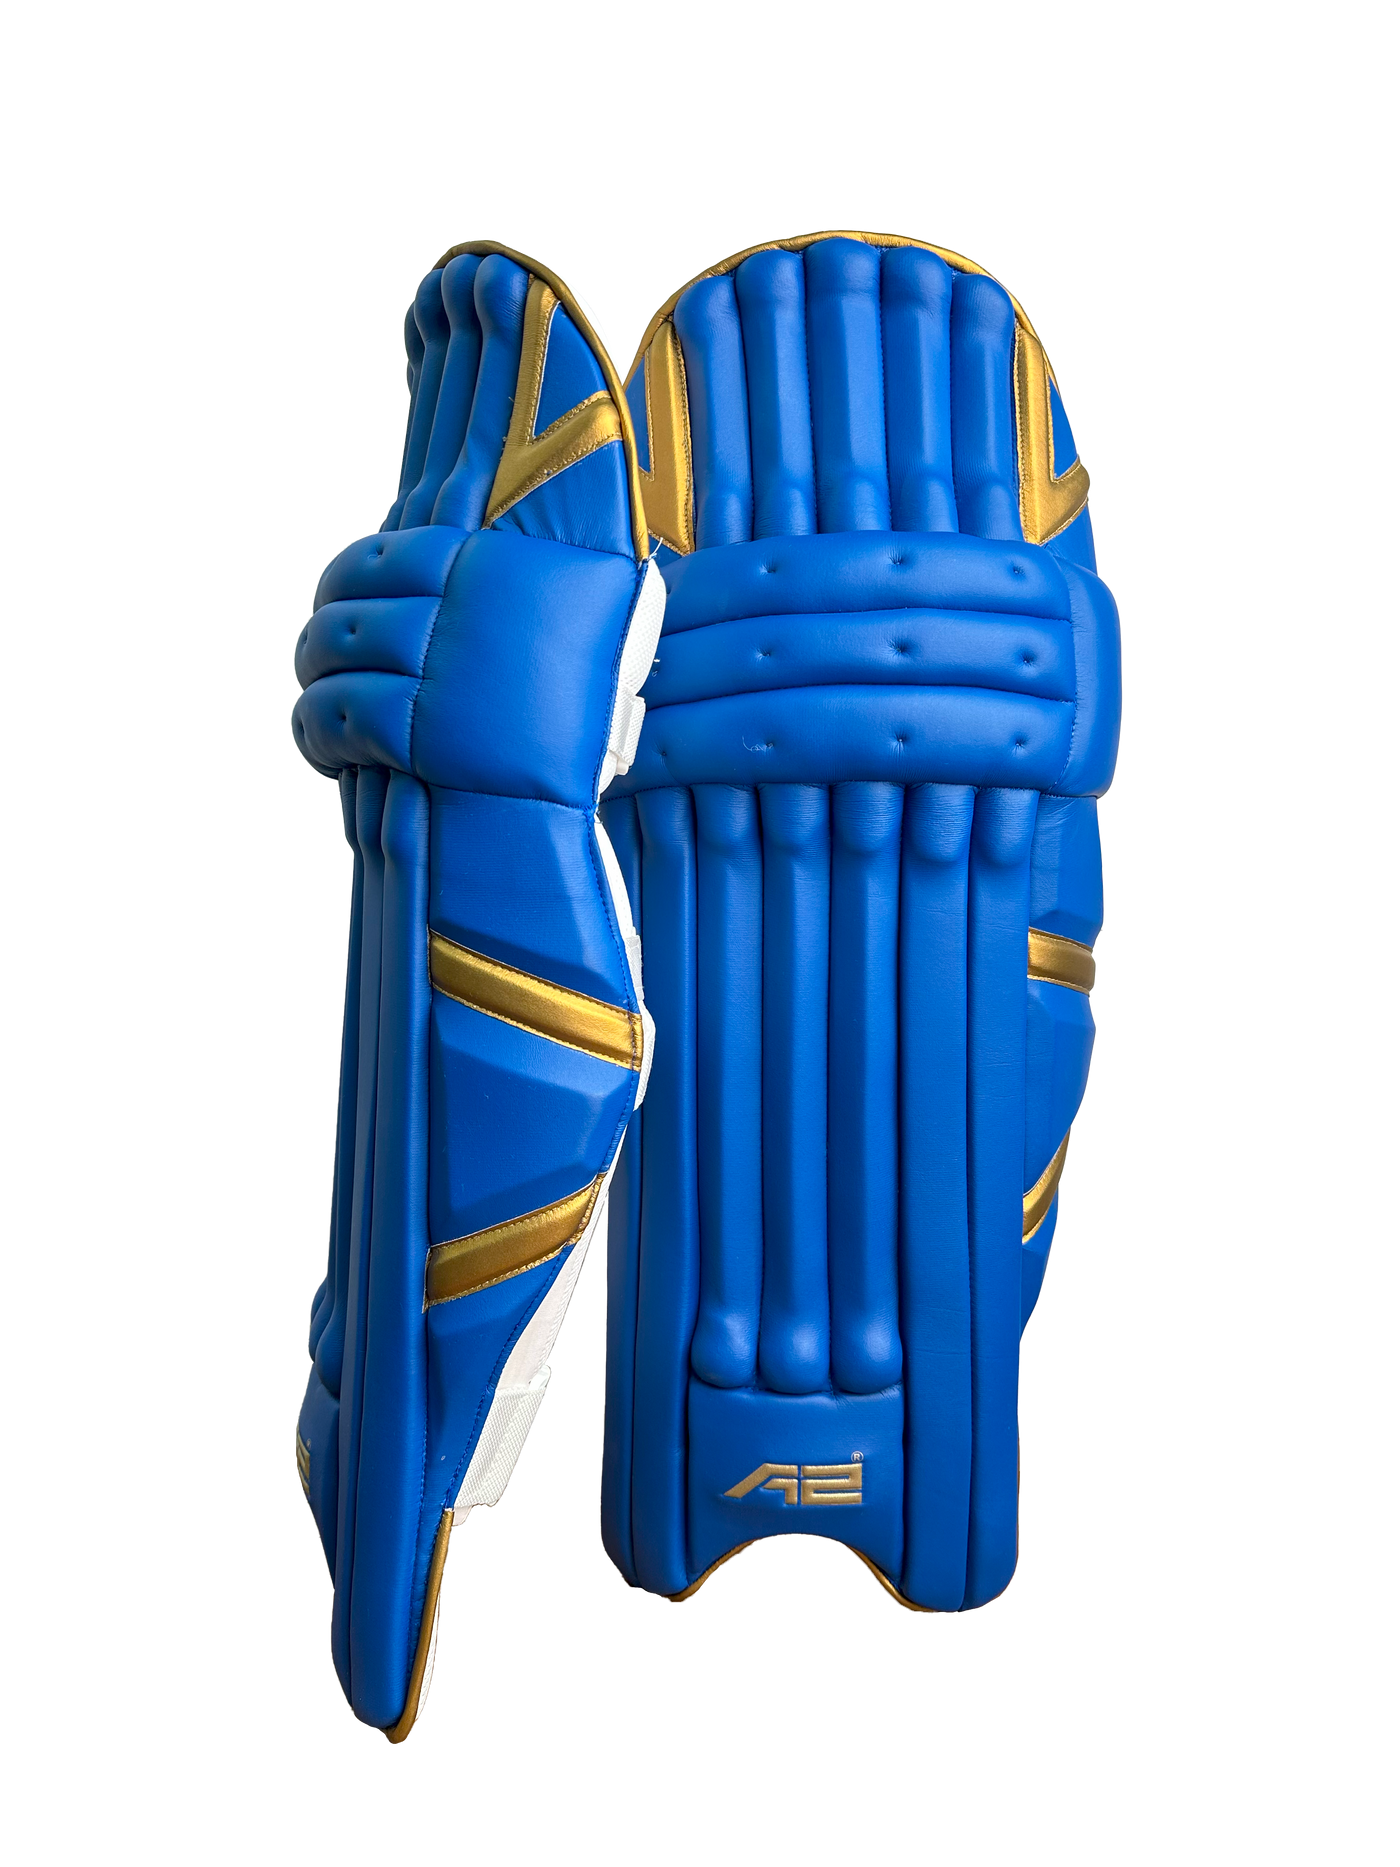 Cricket Batting Pads - Blue & Golden